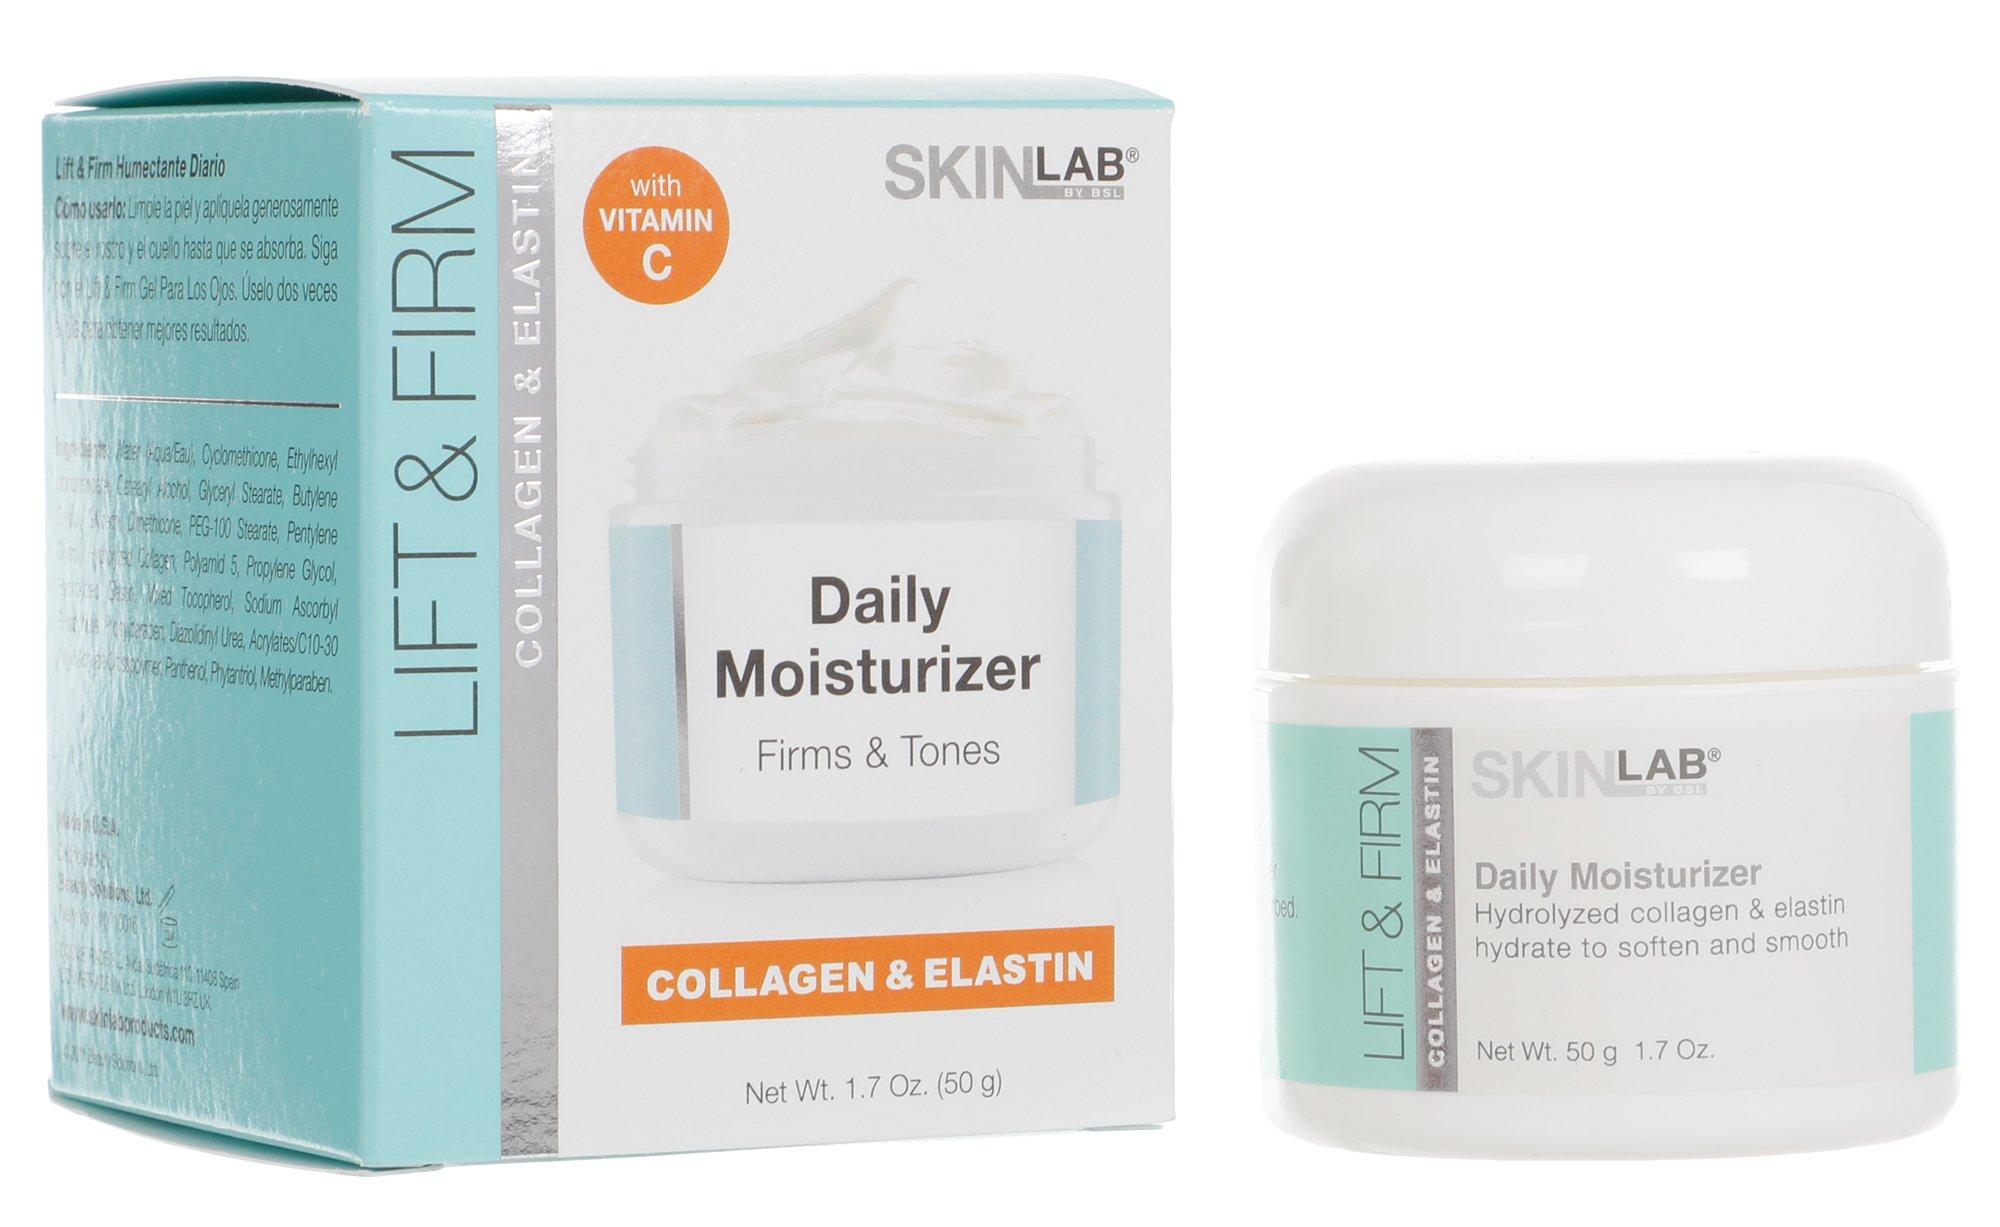 Collagen & Elastin Daily Moisturizer